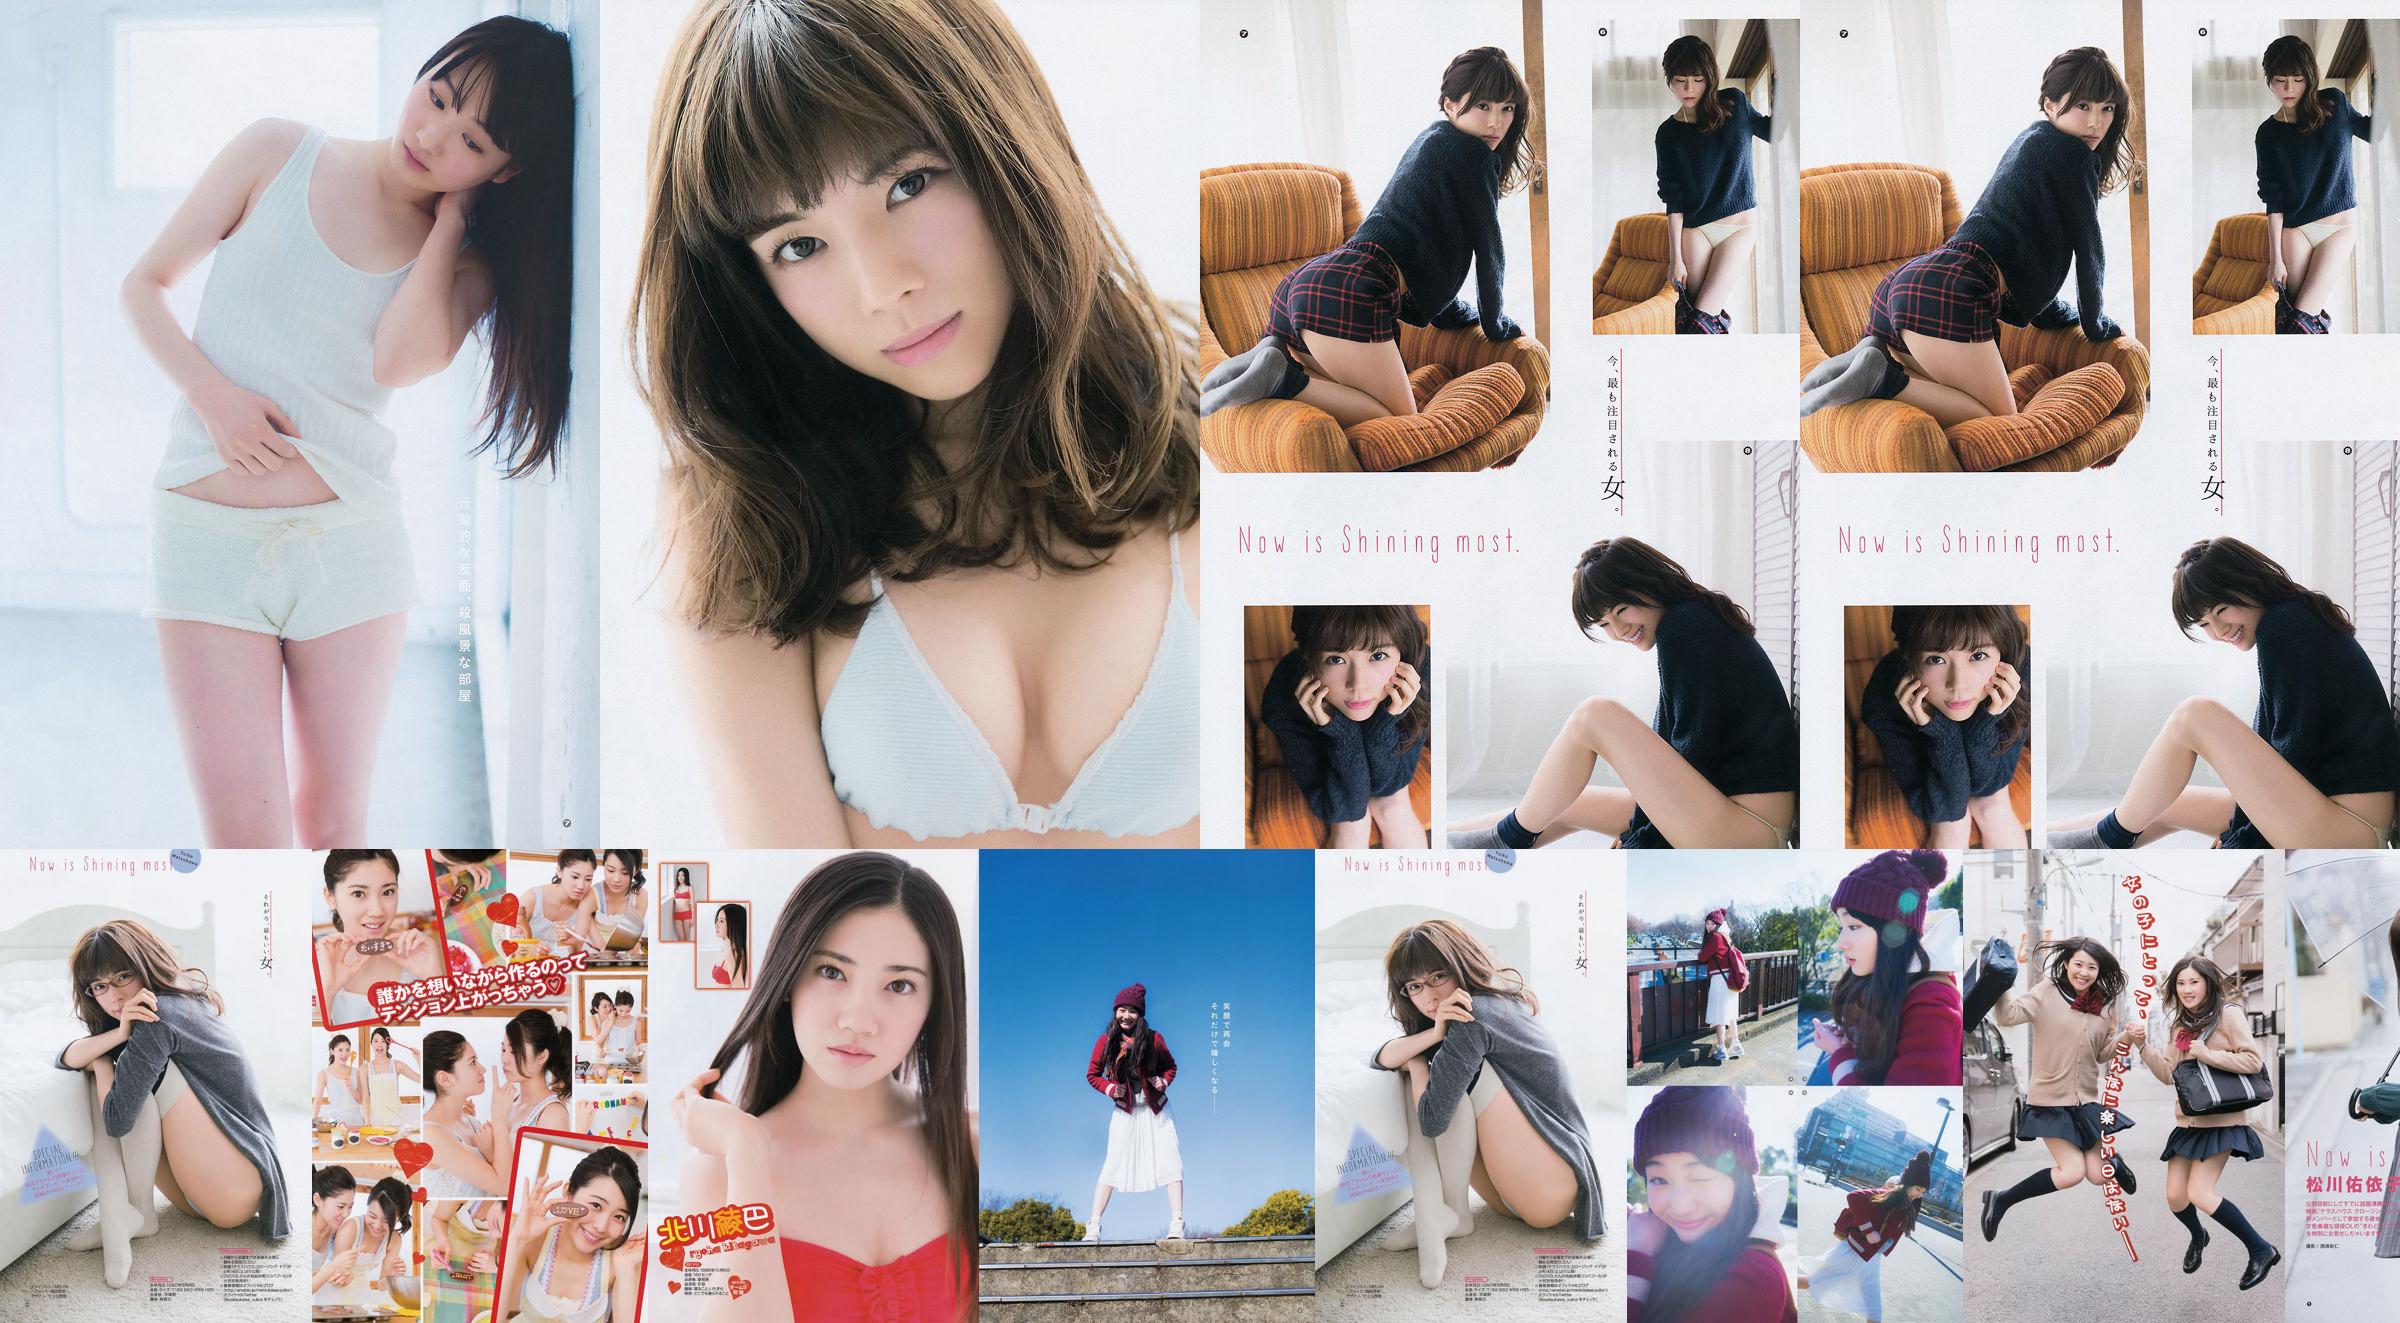 [Young Gangan] Ryoha Kitagawa Ami Miyamae Yuiko Matsukawa Narumi Akizuki 2015 nr. 04 foto No.93947c Pagina 1